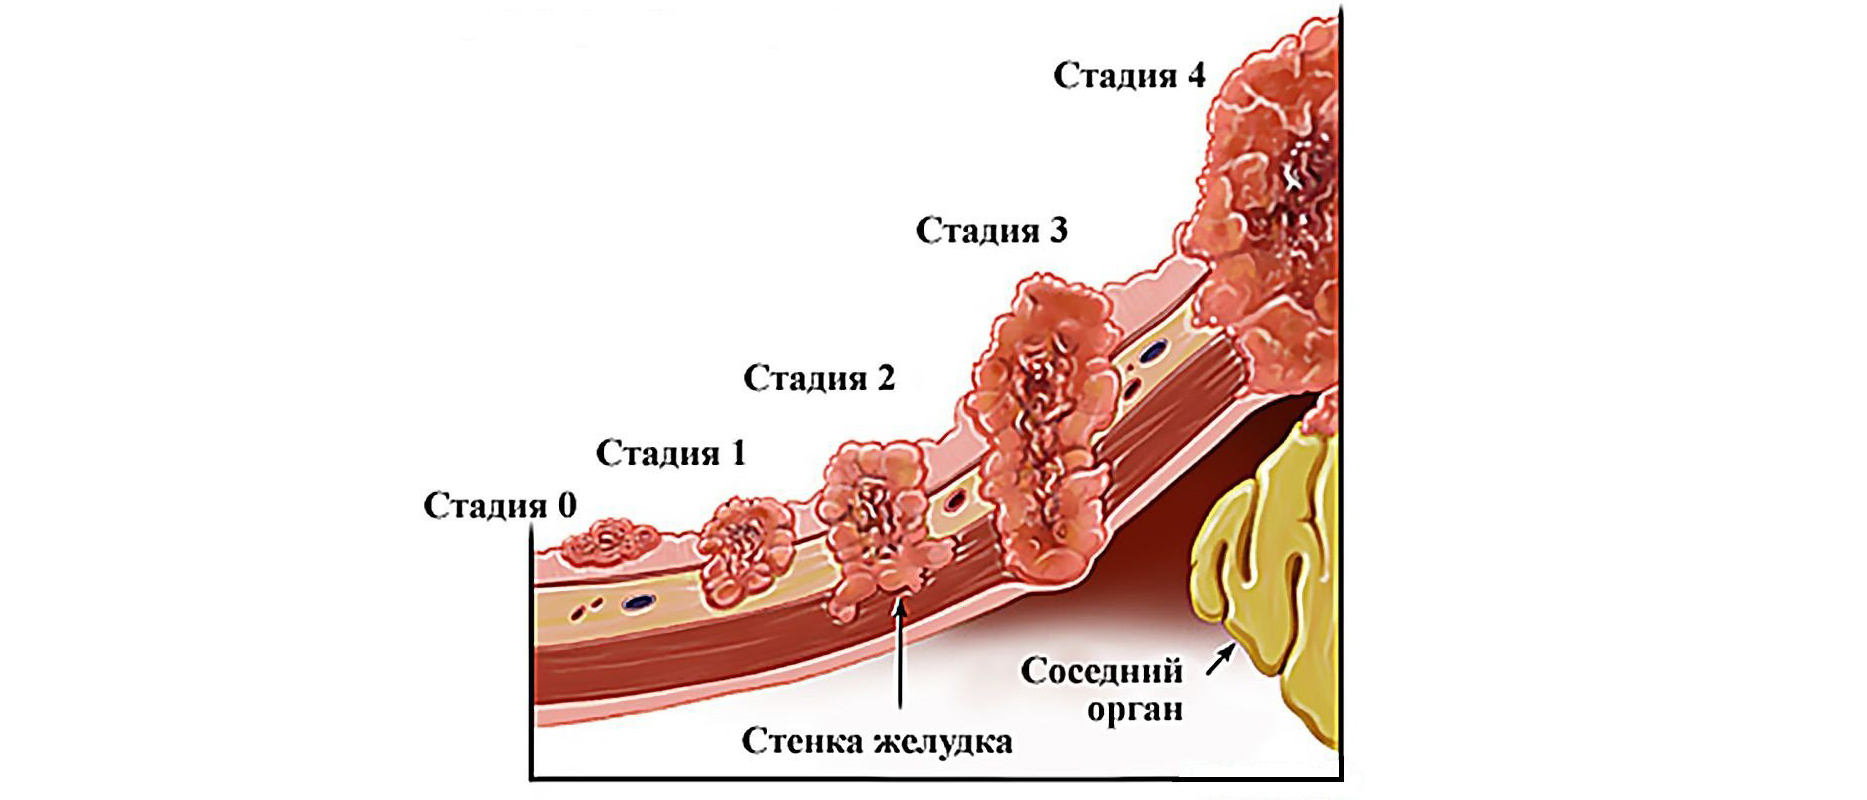 3 стадия рака с метастазами. Стадии развития опухоли желудка. 3 Стадии развития опухоли. Степени онкологии желудка.